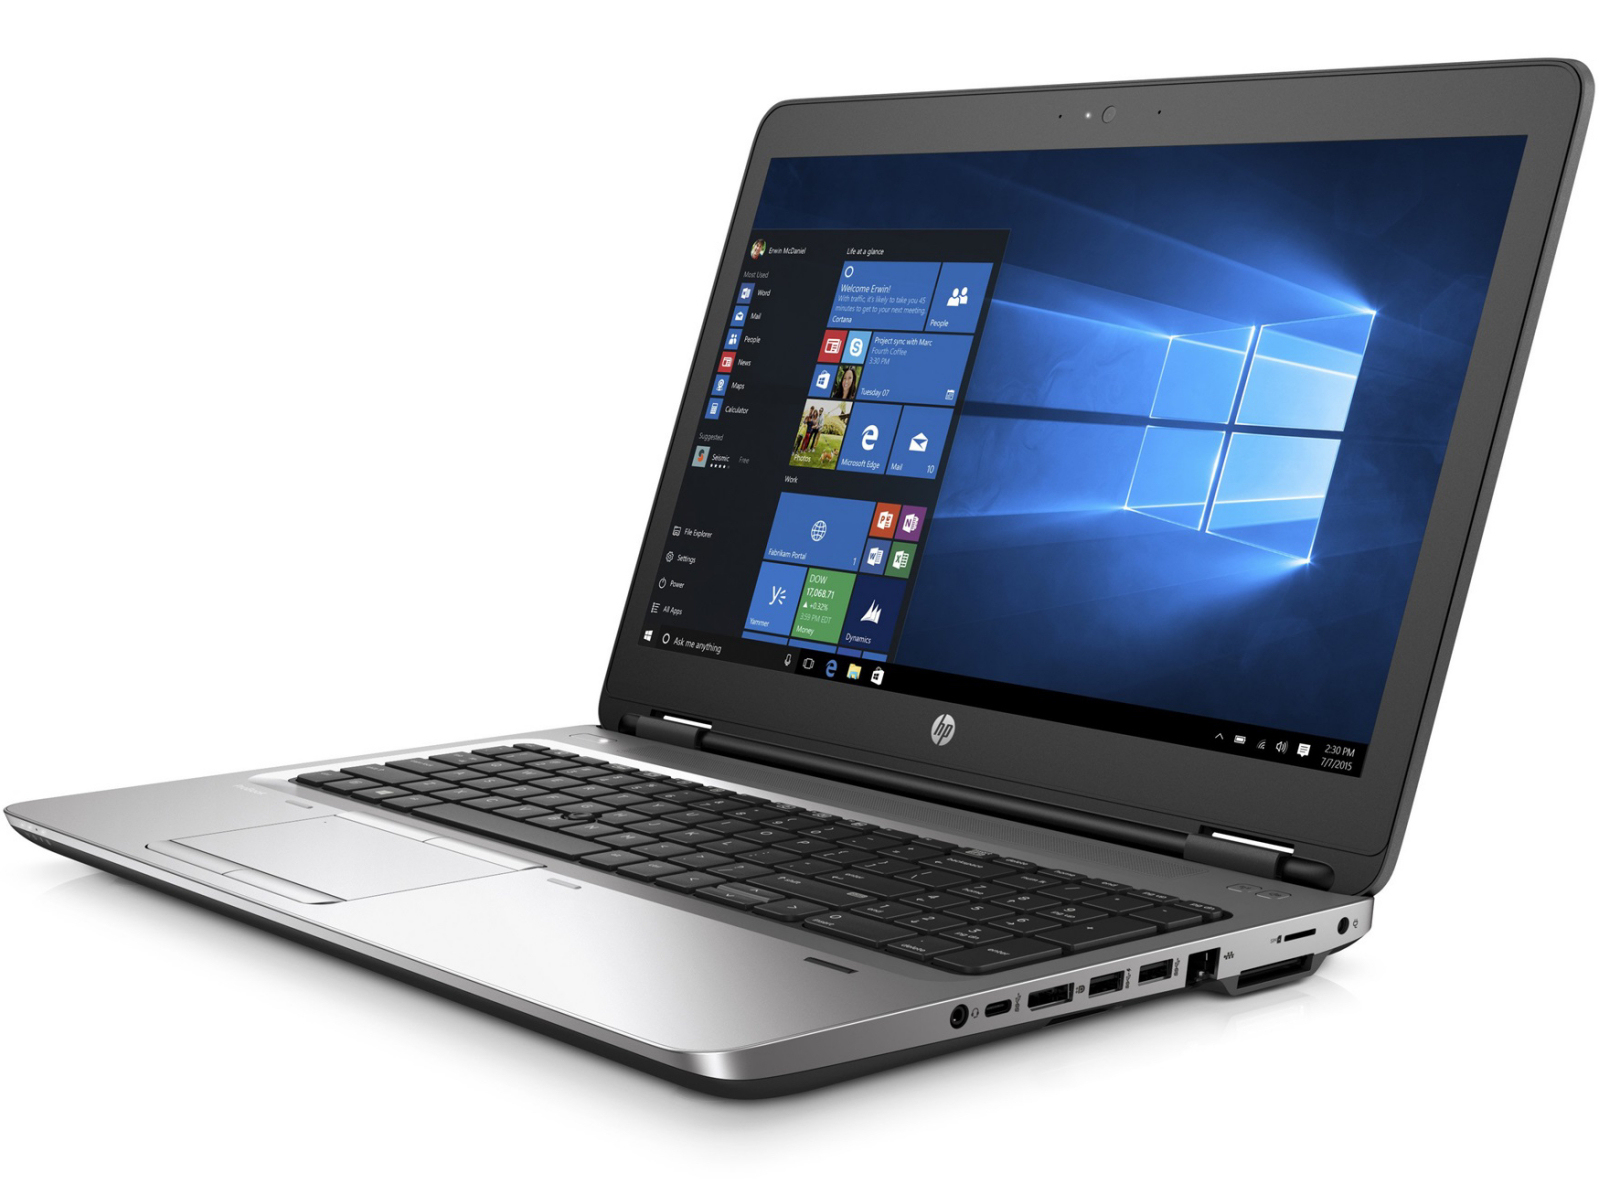 HP ProBook 650 G2 Intel i5 6300u 2.40Ghz 12GB RAM 128GB SSD 15.6" Win 10 Pro - B Grade Full Size Image